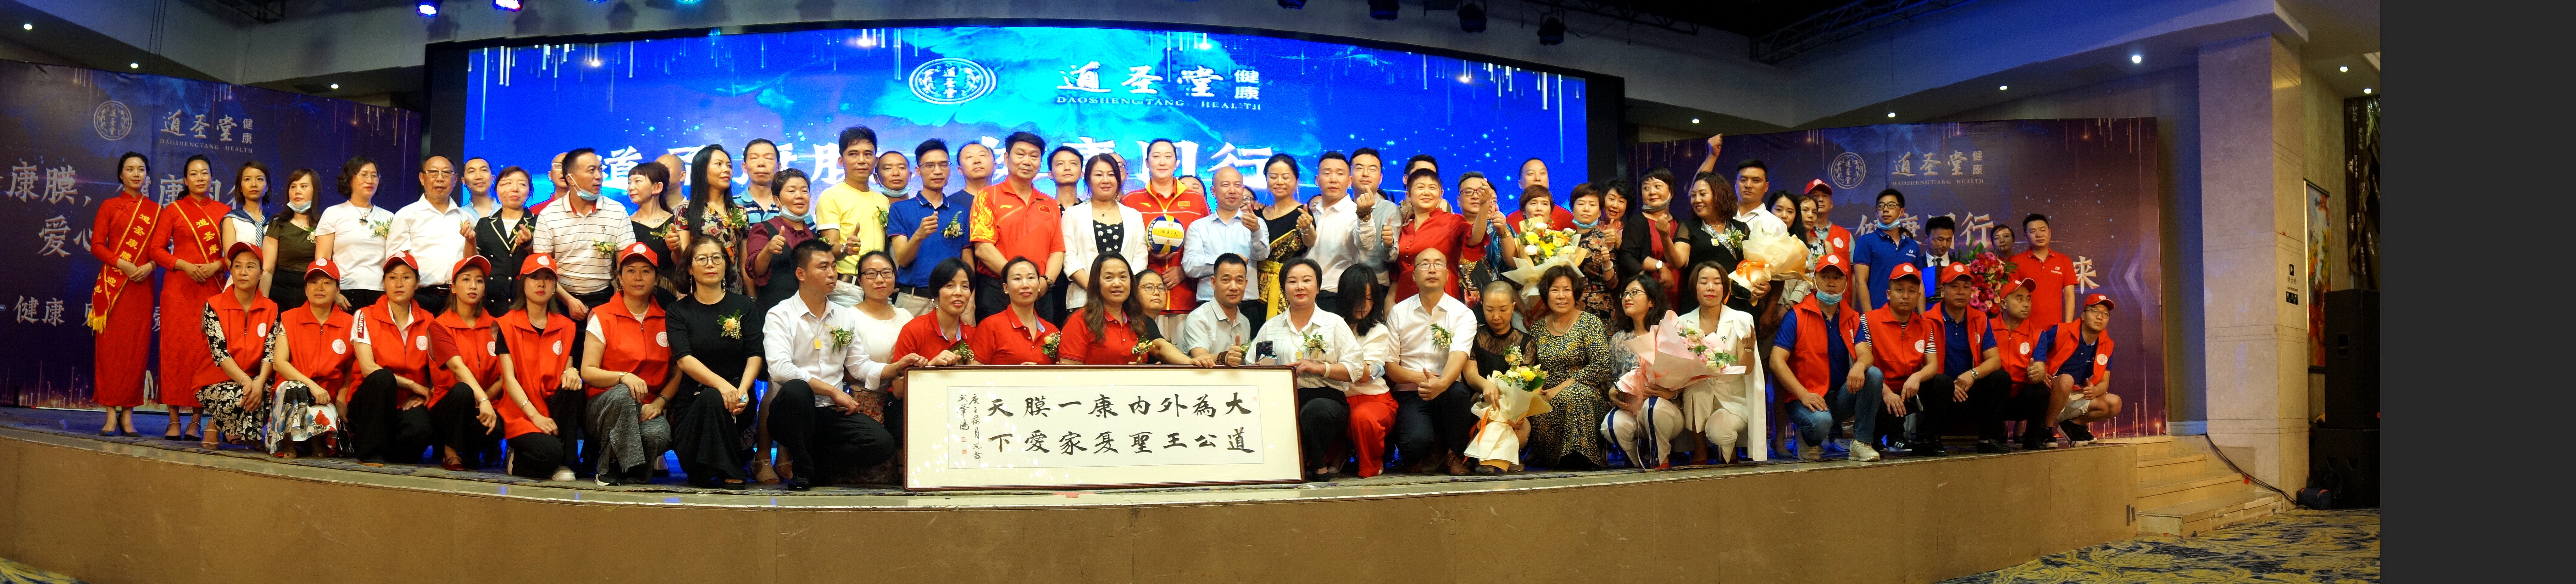 四川省众扶慈善基金会益行志愿者服务站在蓉成立